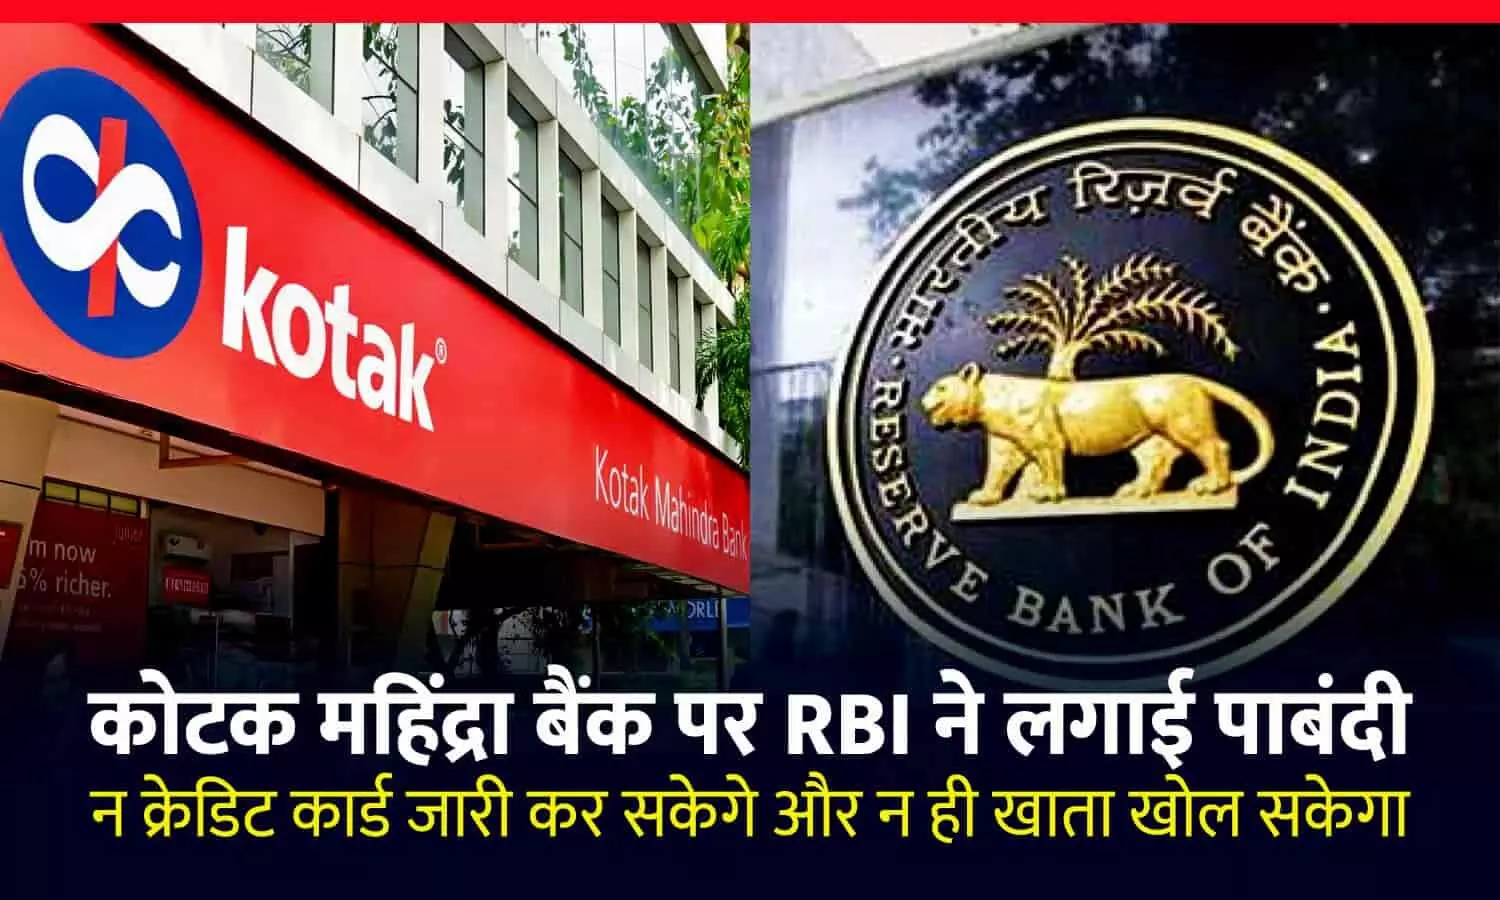 देश के चौथे सबसे बड़े बैंक पर RBI ने लगाई पाबंदी: नए क्रेडिट कार्ड नहीं जारी कर सकेगा कोटक महिंद्रा बैंक, ऑनलाइन खाता खोलने पर भी रोक